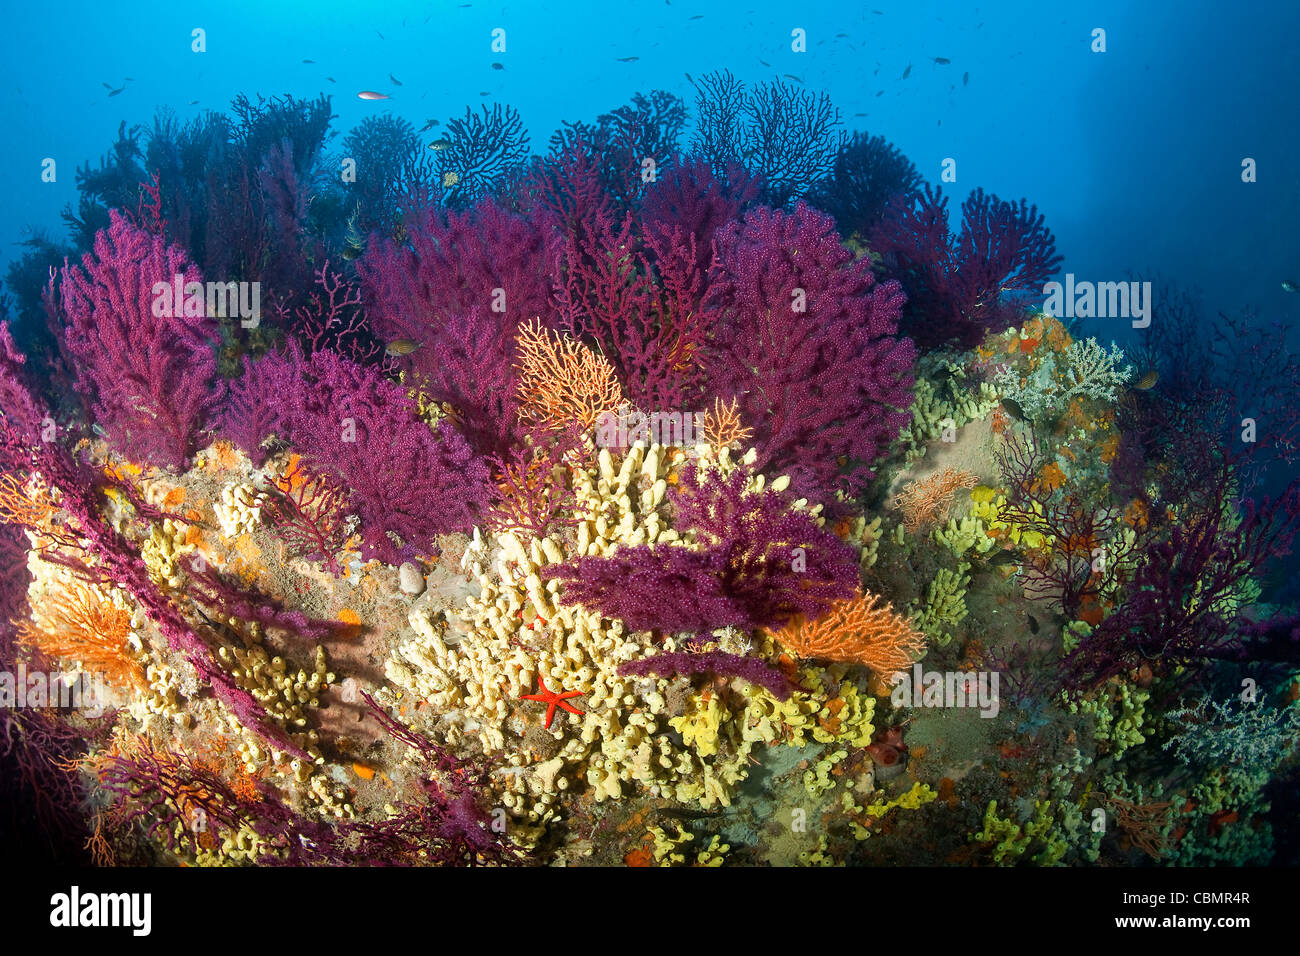 Gorgonias coloridas en el Arrecife de Coral, Paramuricea clavata, Ischia, el Mar Mediterráneo, Italia Foto de stock